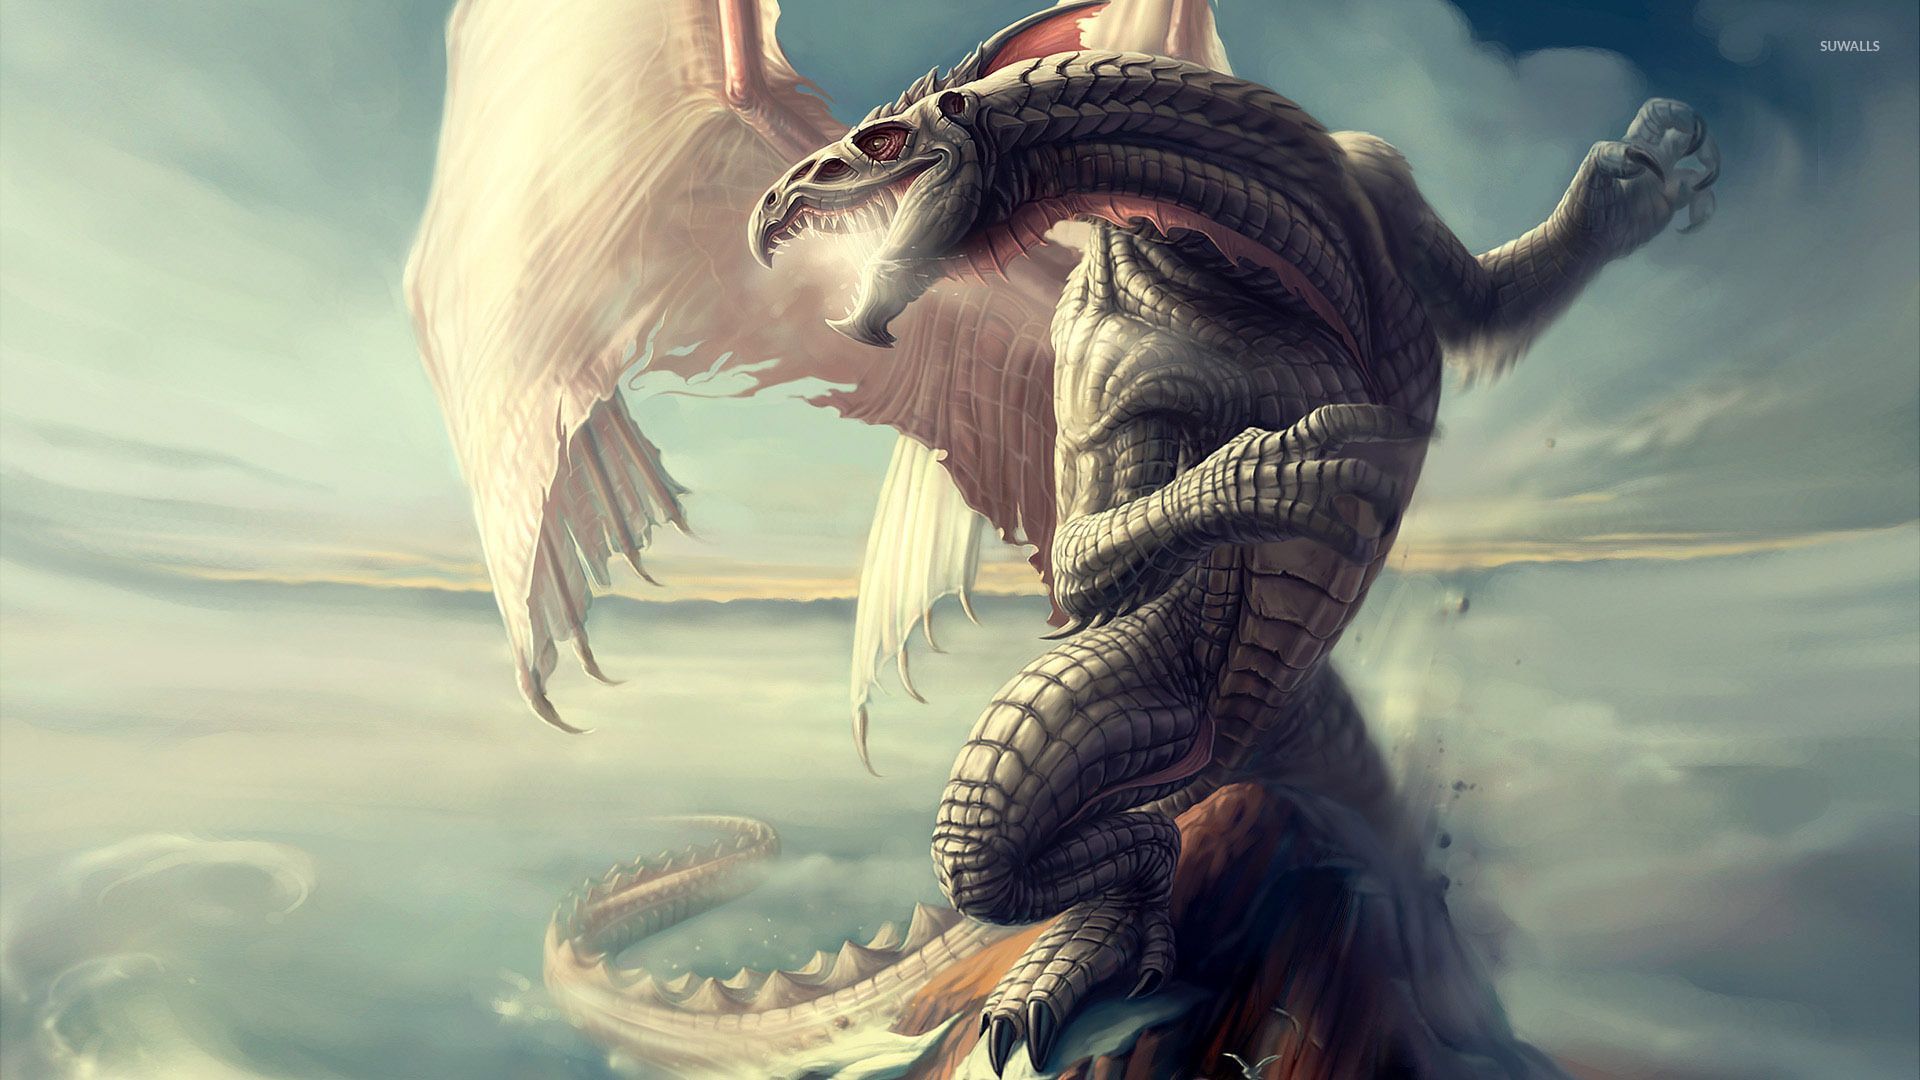 Unicorn vs Dragon wallpaper wallpaper - Dragon picture, Cool dragon picture, Fantasy dragon